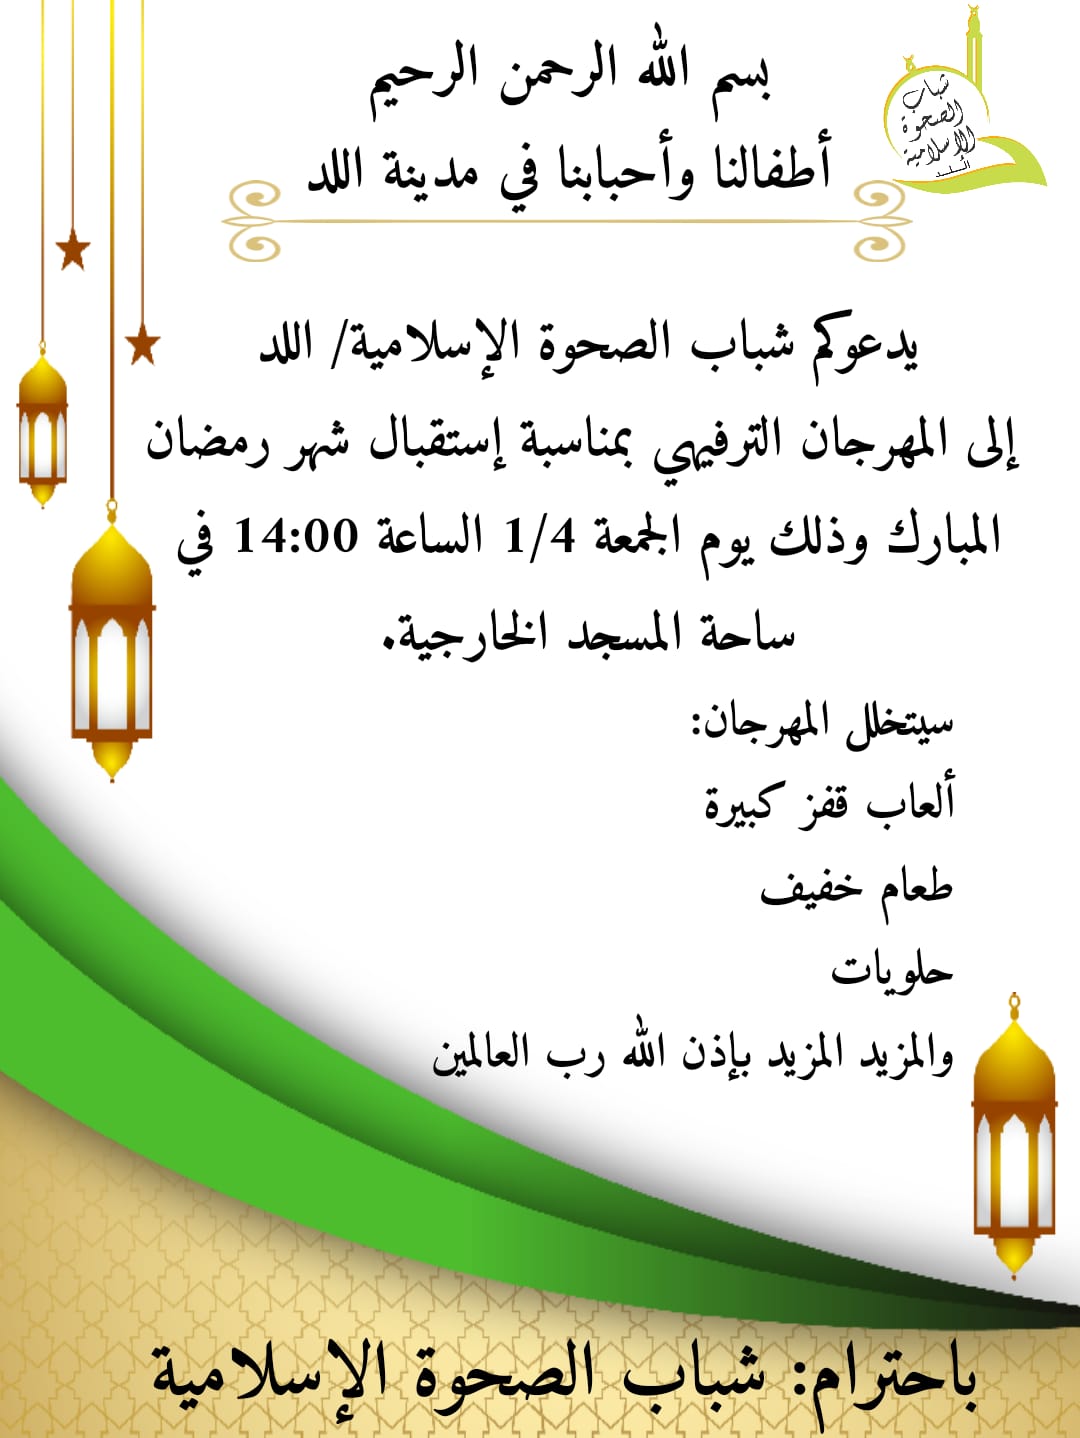  غداً: مهرجان ترفيهي لأطفال اللد في ساحة المسجد الكبير